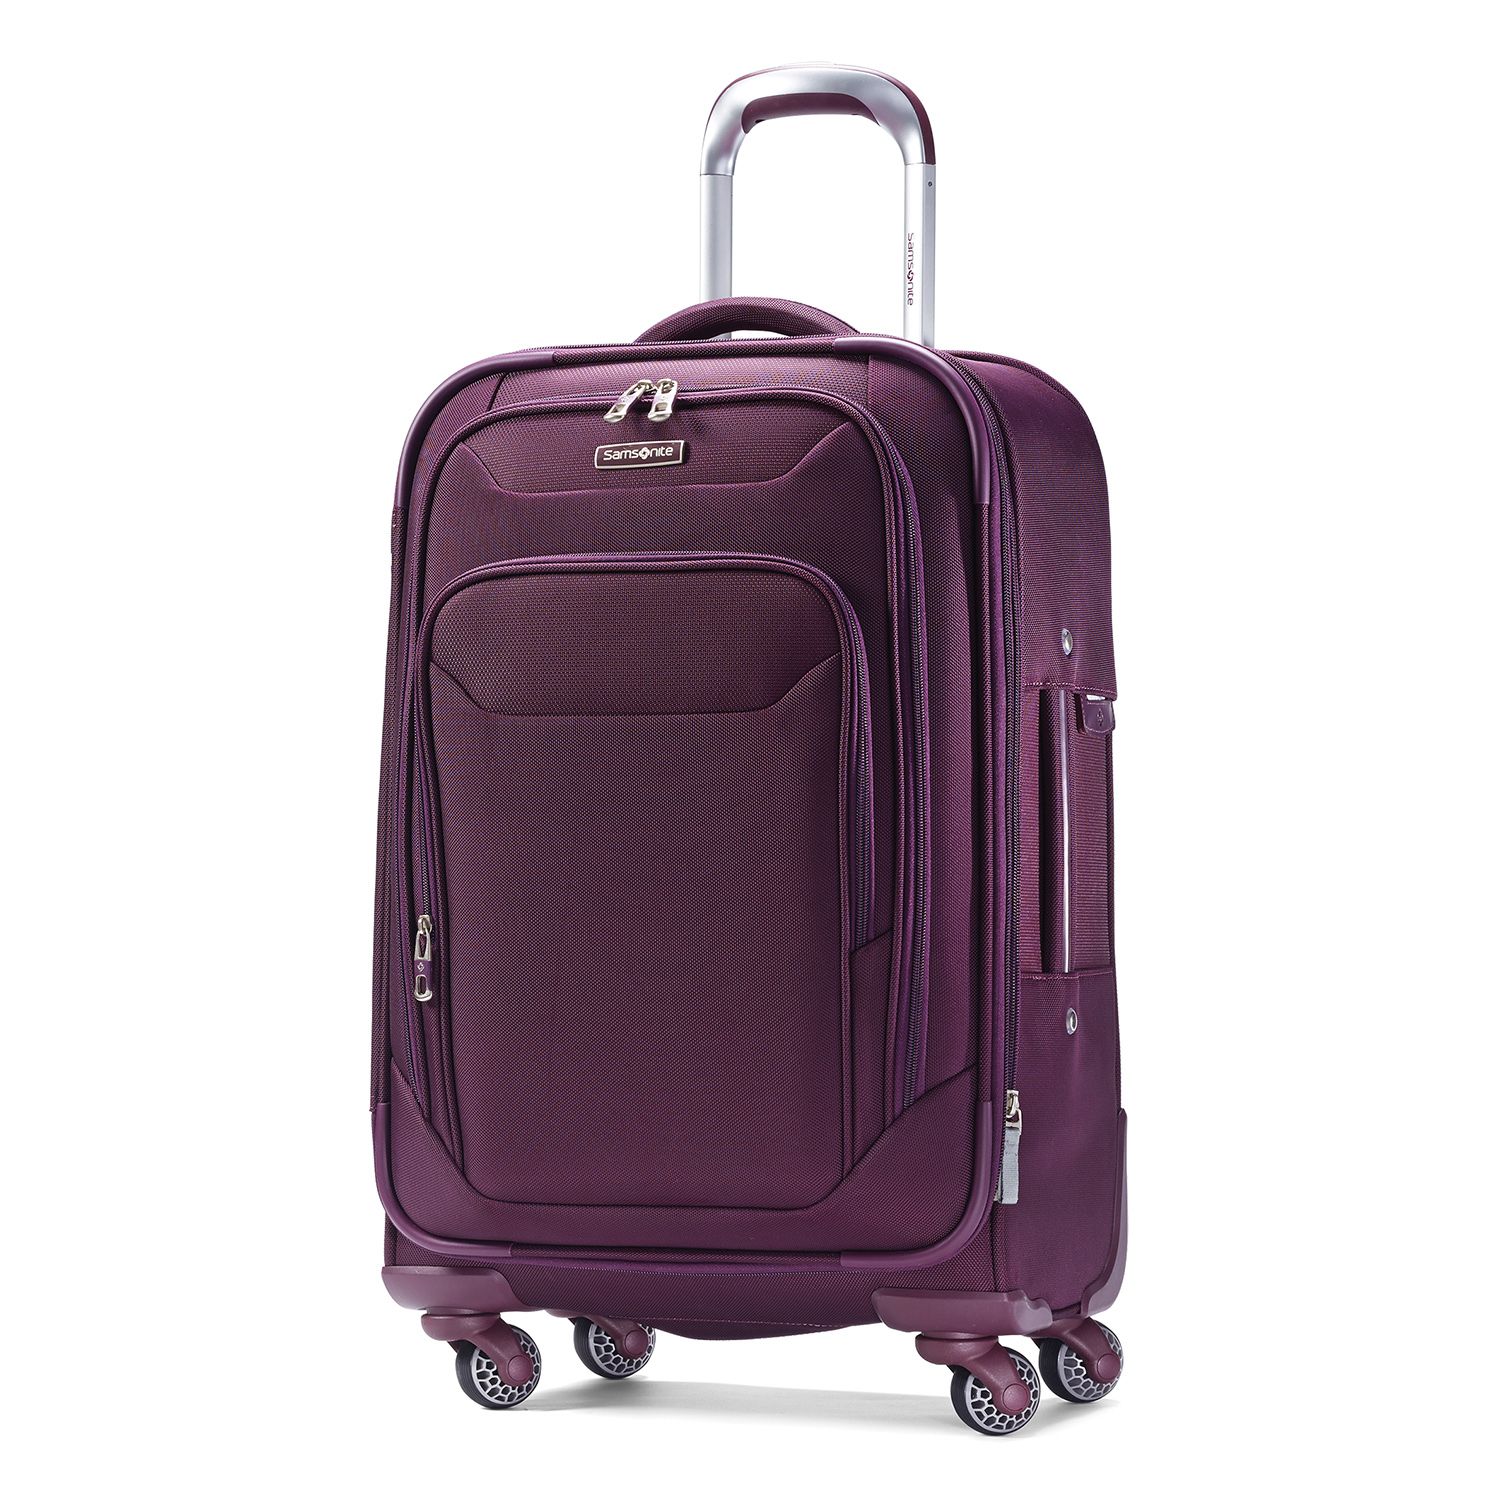 samsonite carry on luggage purple